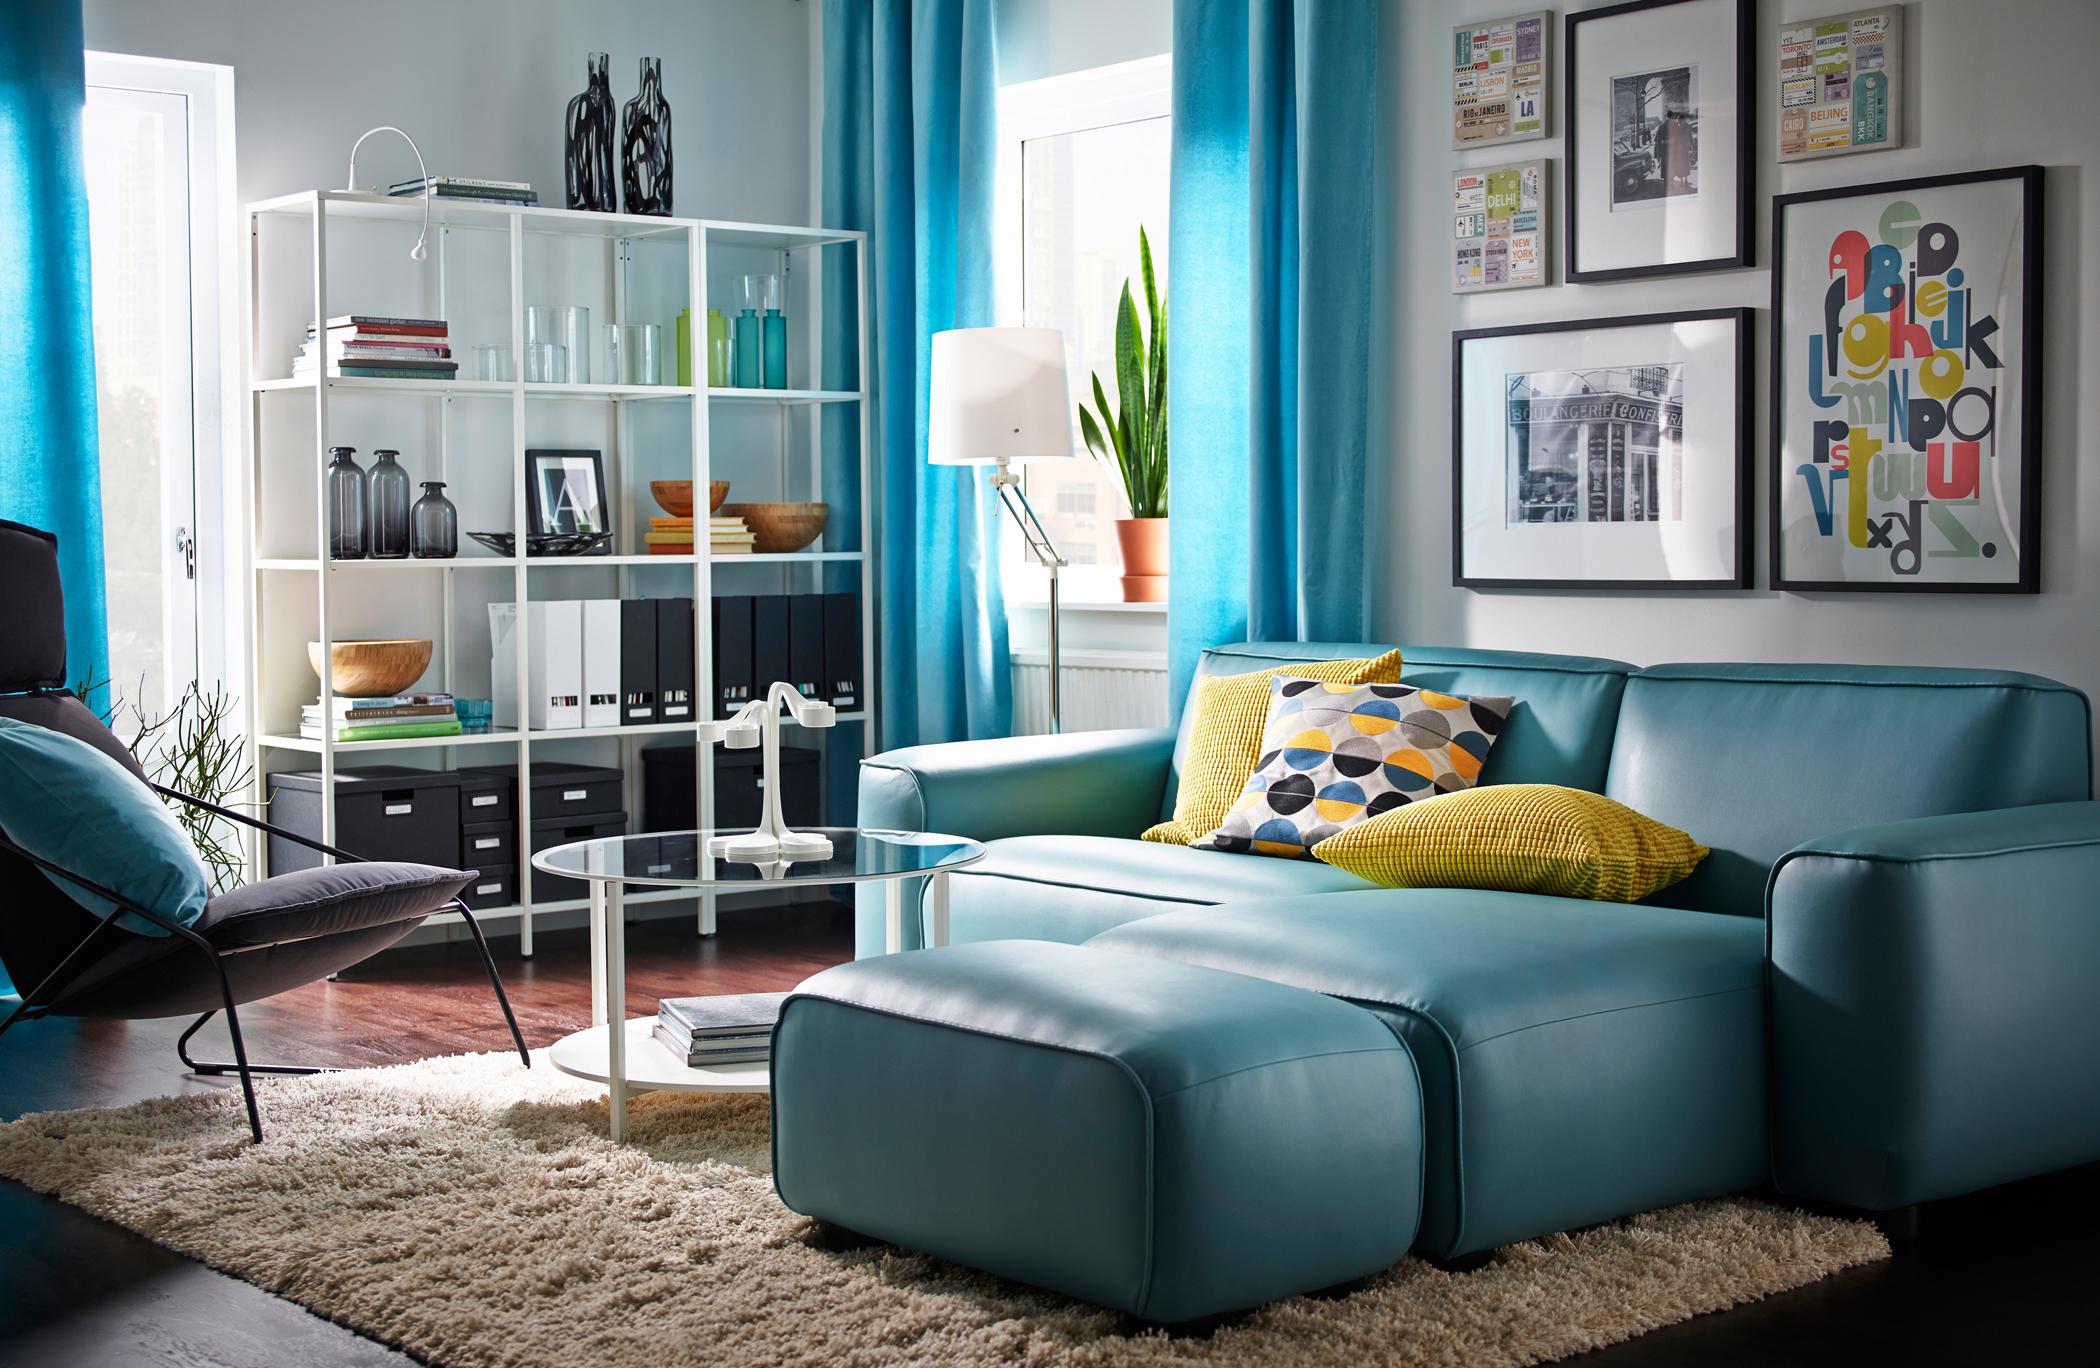 Moderner Look im Wohnzimmer #couchtisch #regal #teppich #sessel #wandgestaltung #ikea #sofa #blauessofa #ottomane #glascouchtisch #wohnzimmergestaltung ©Inter IKEA Systems B.V.